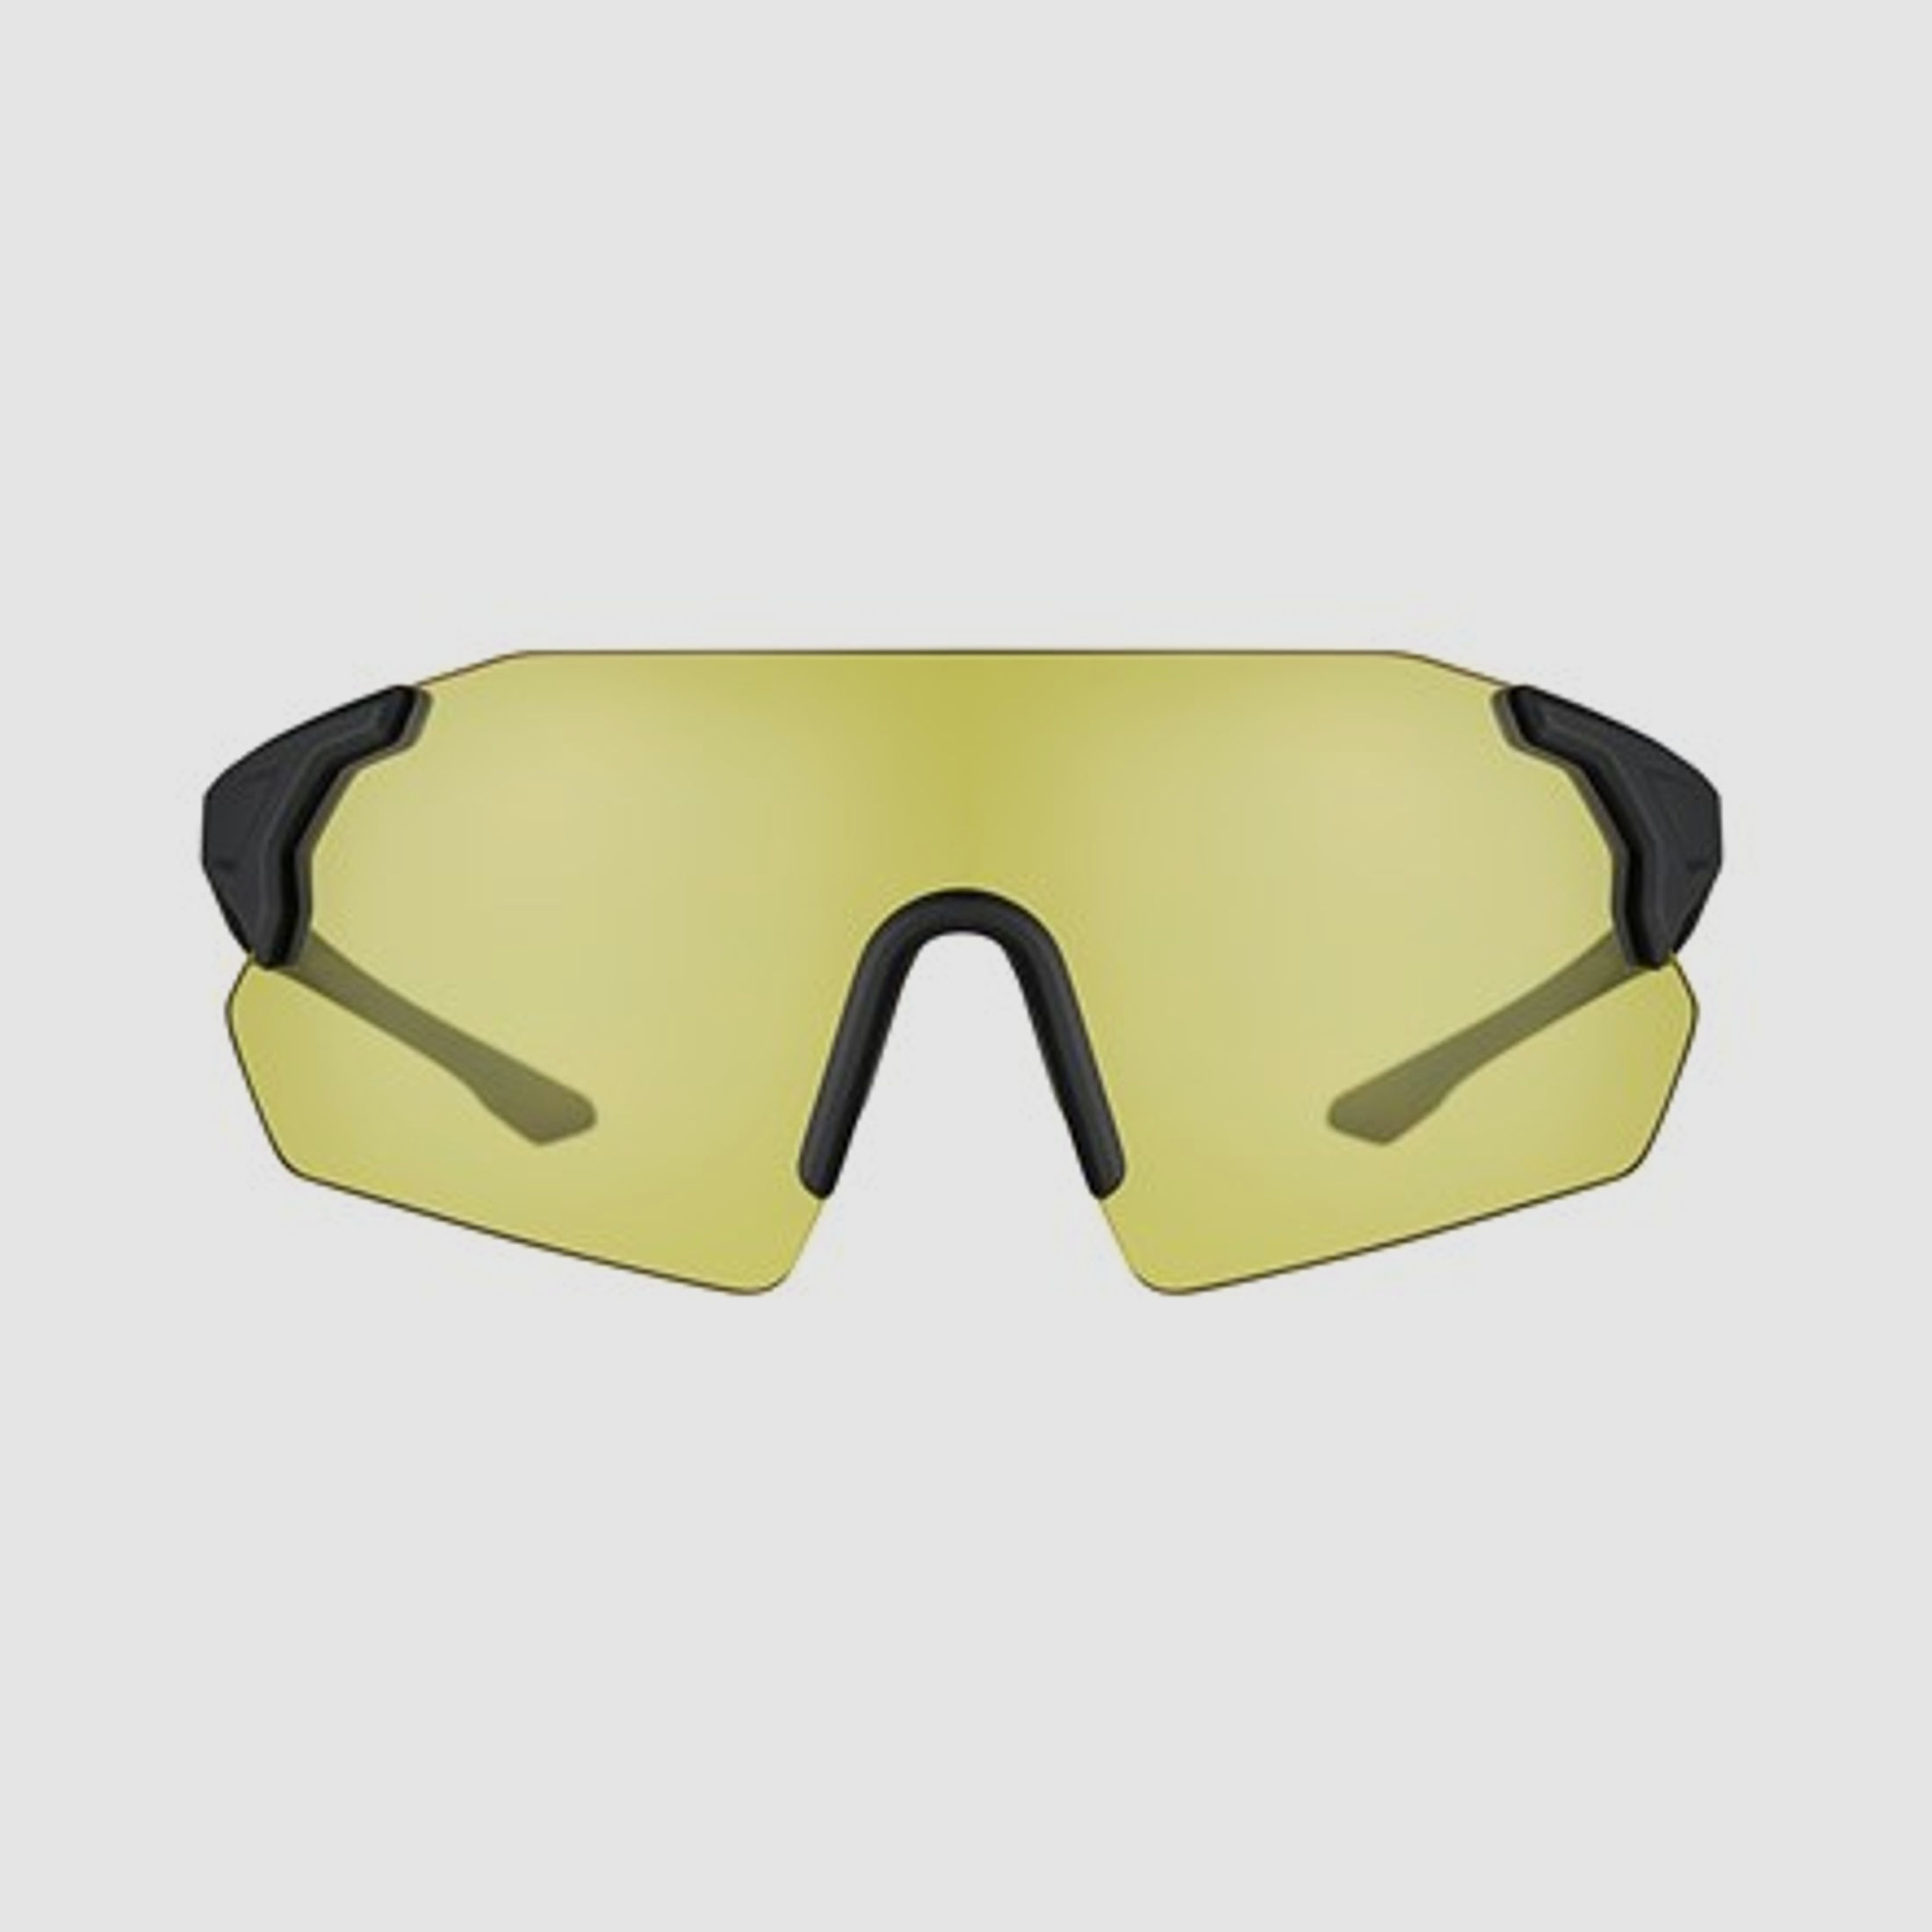 Beretta Schießbrille Challenge EVO gelb